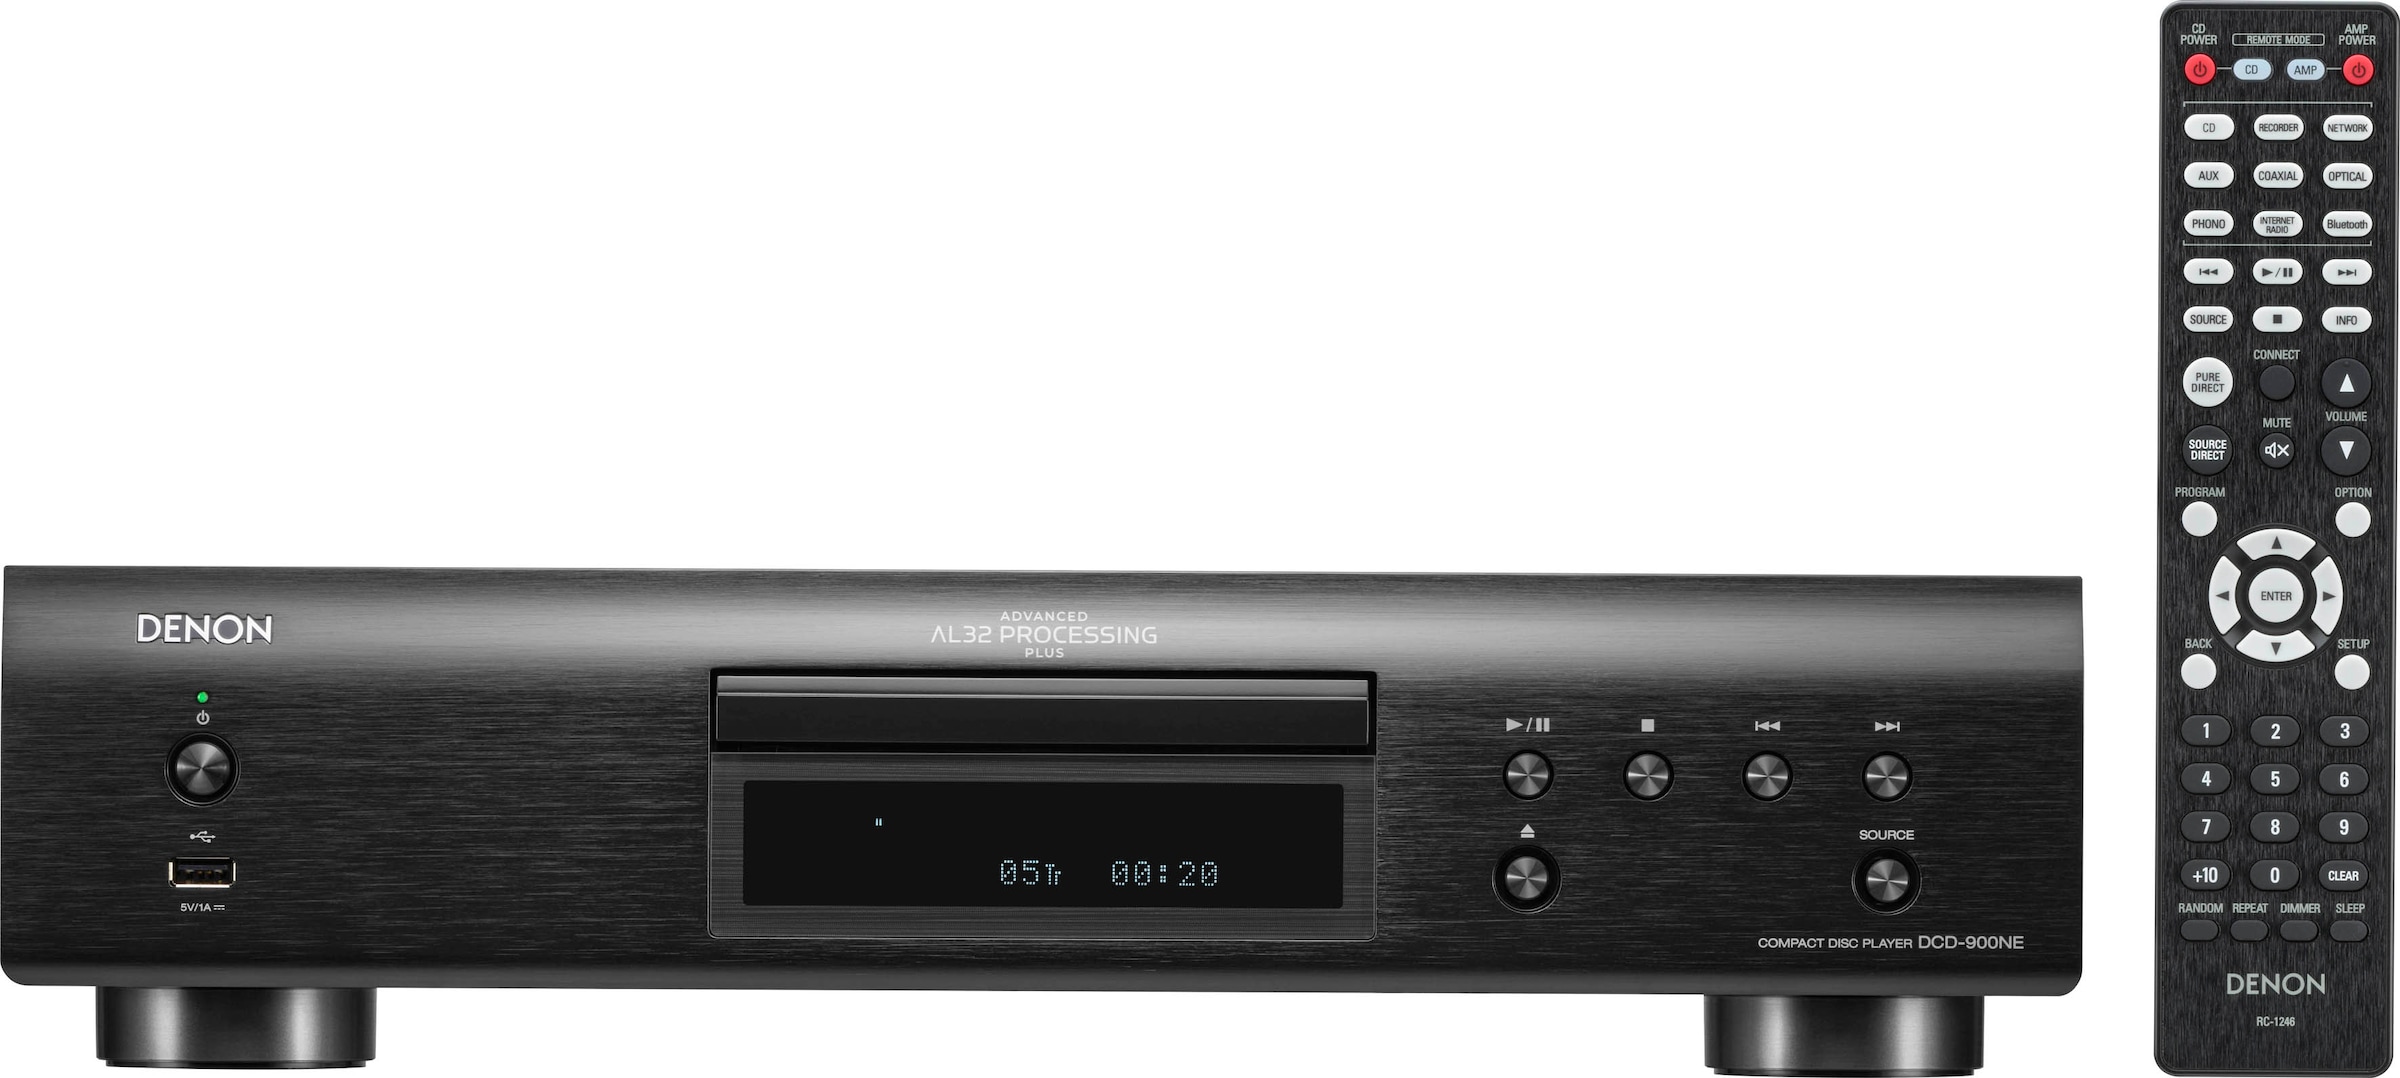 online Denon CD-Player USB-Audiowiedergabe kaufen »DCD-900NE«,